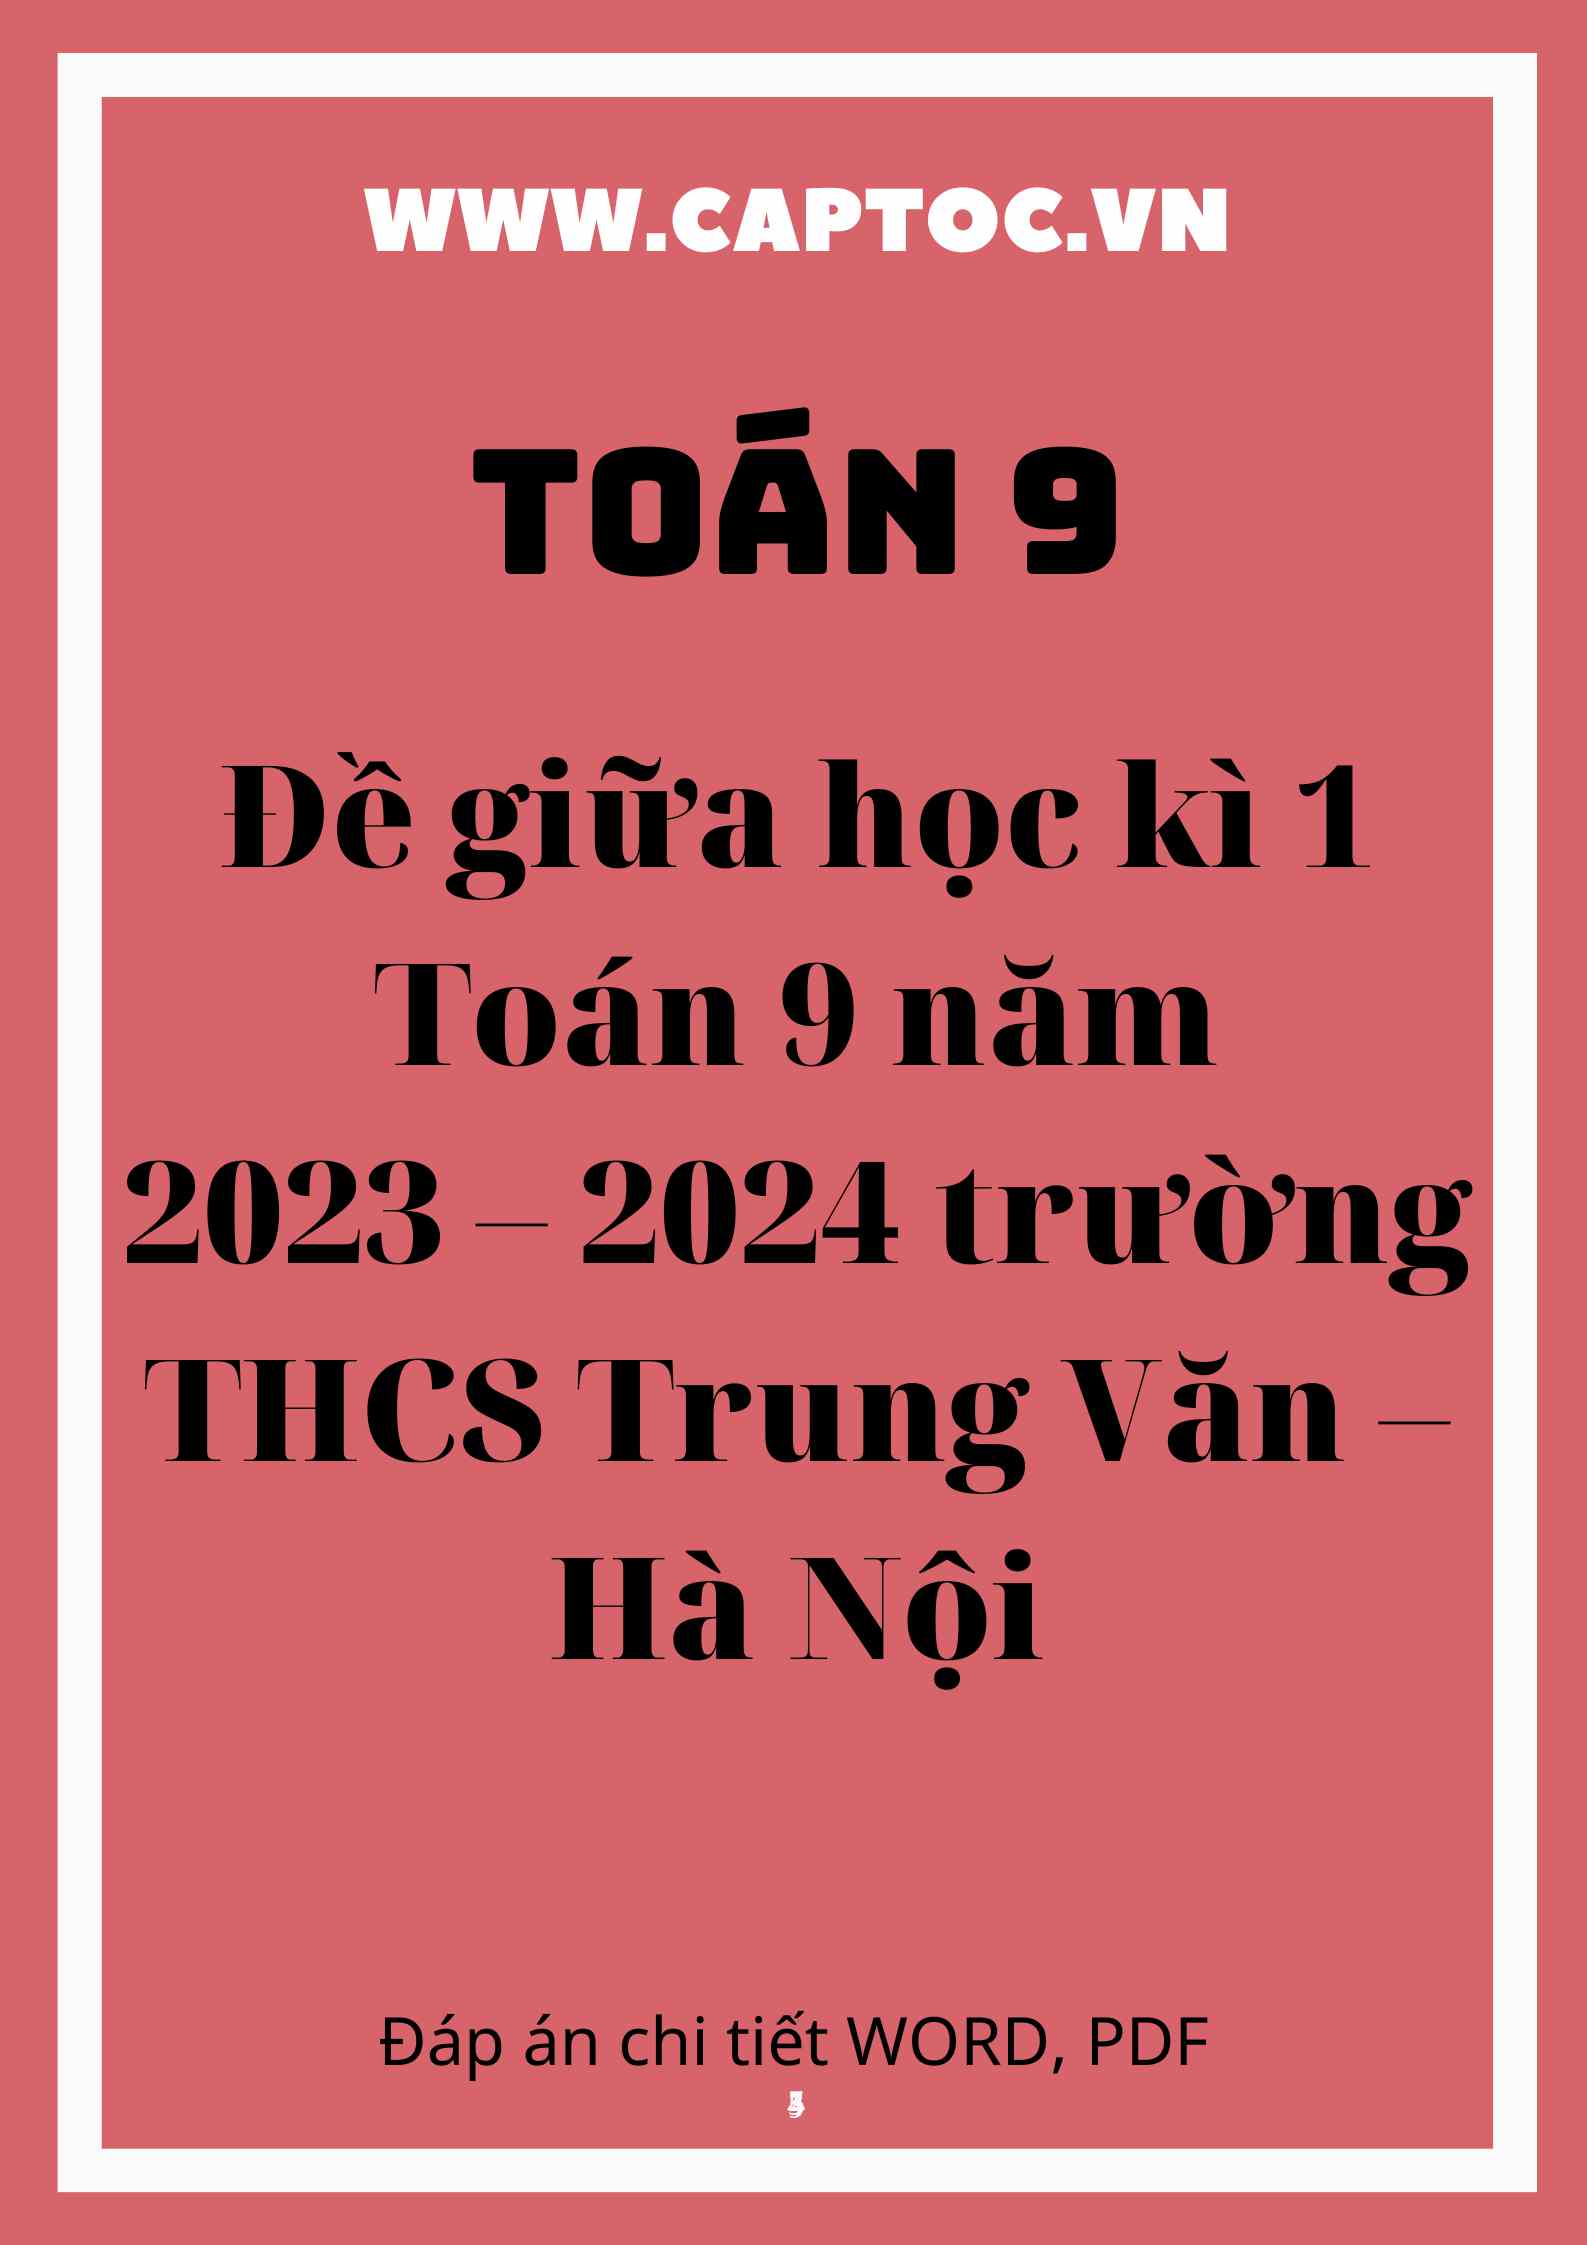 Đề giữa học kì 1 Toán 9 năm 2023 – 2024 trường THCS Trung Văn – Hà Nội